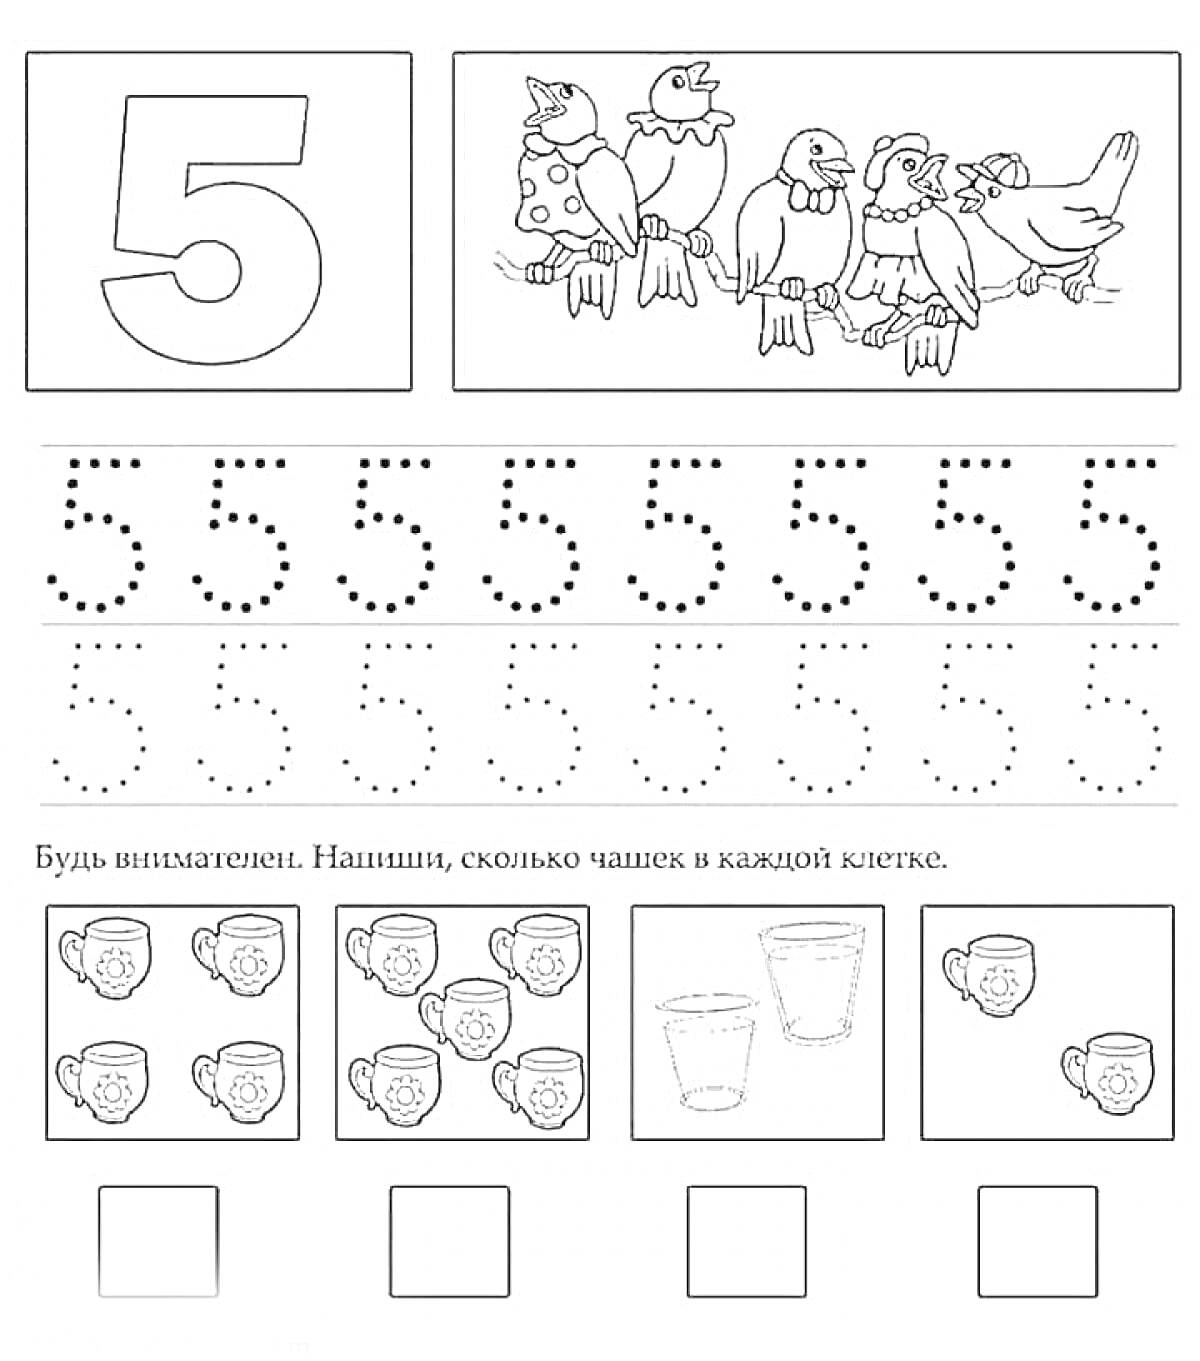 Раскраска Цифра 5: изображения цифры, птицы на ветке, учимся обводить цифру 5, упражнение на счет чашек